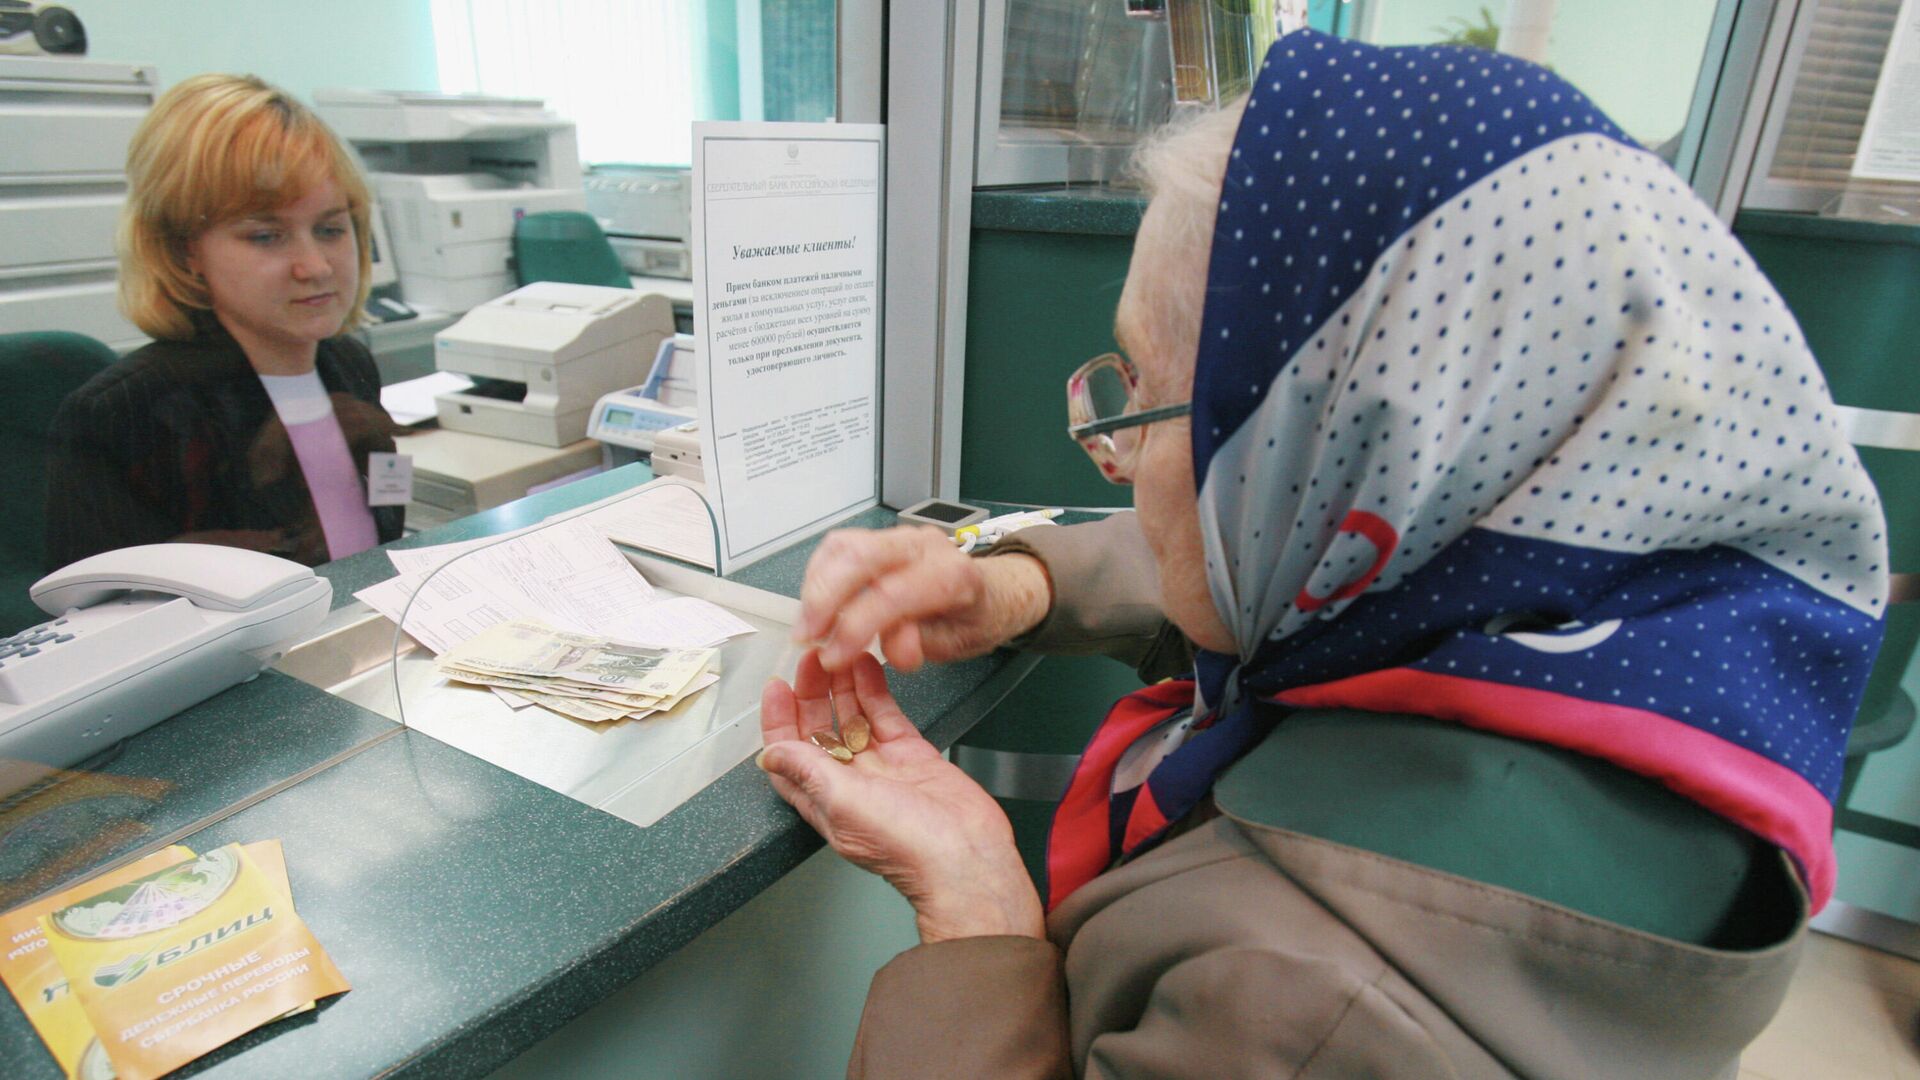 Пожилая женщина в банке - Sputnik Беларусь, 1920, 14.12.2021